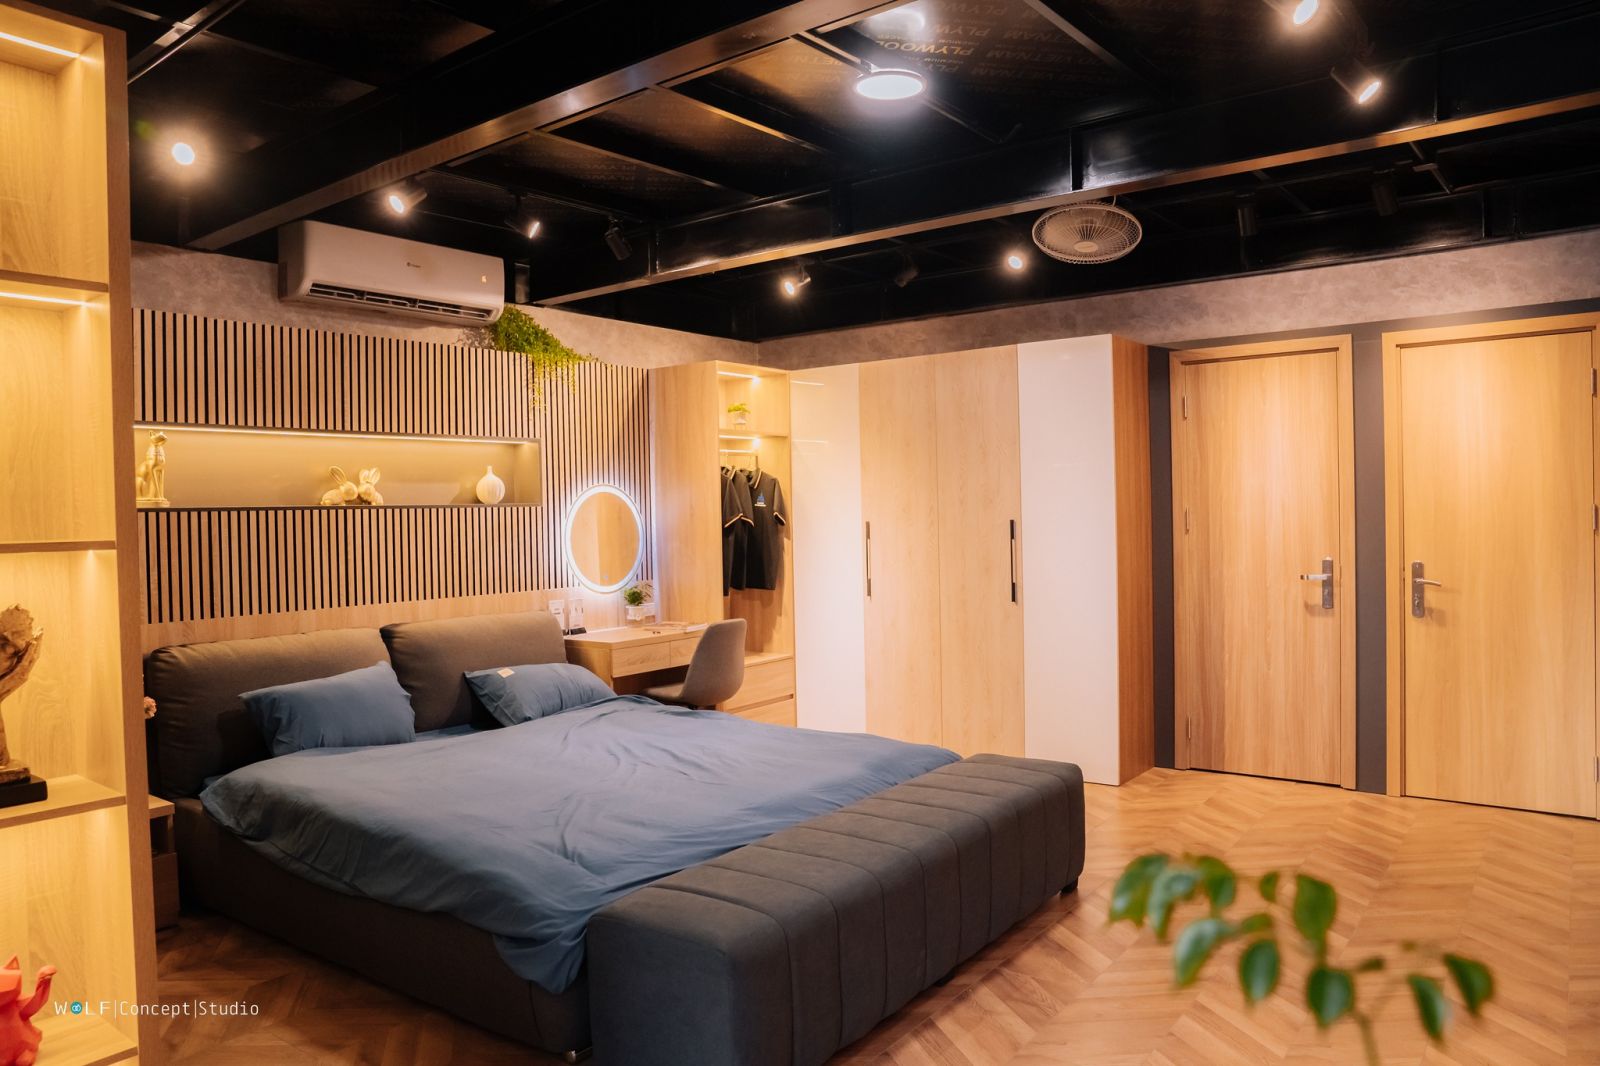 Nội thất phòng ngủ hiện đại gỗ An Cường tại Showroom Hoàng Anh Ninh Bình